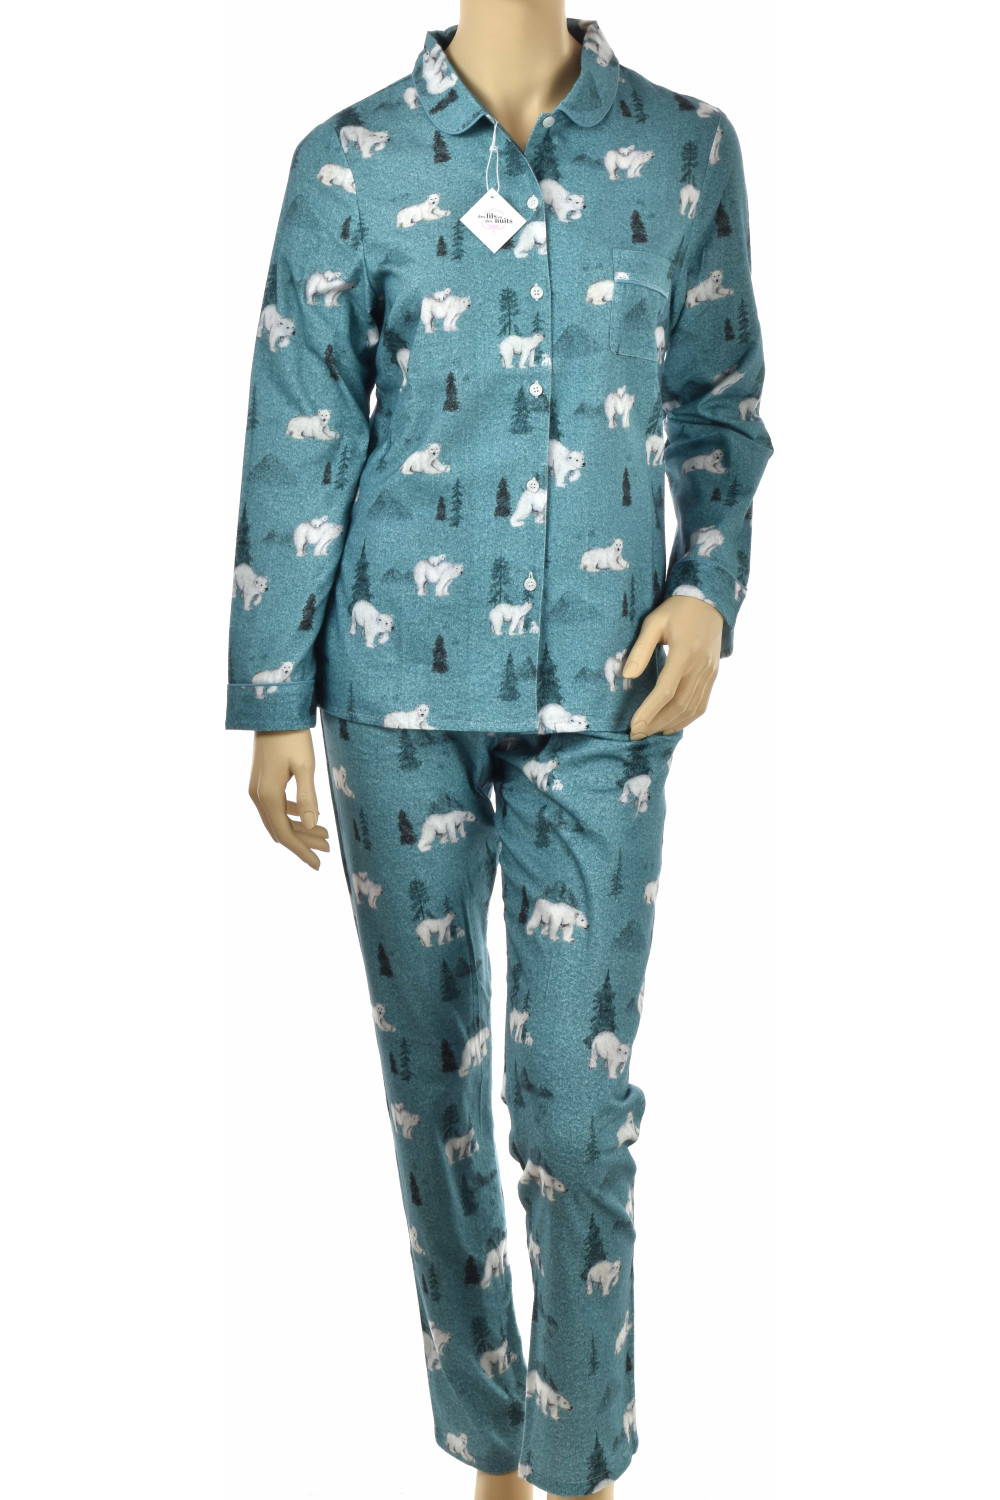 Pyjama long pour garçon en pilou-pilou, coloris Banquise 100% coton